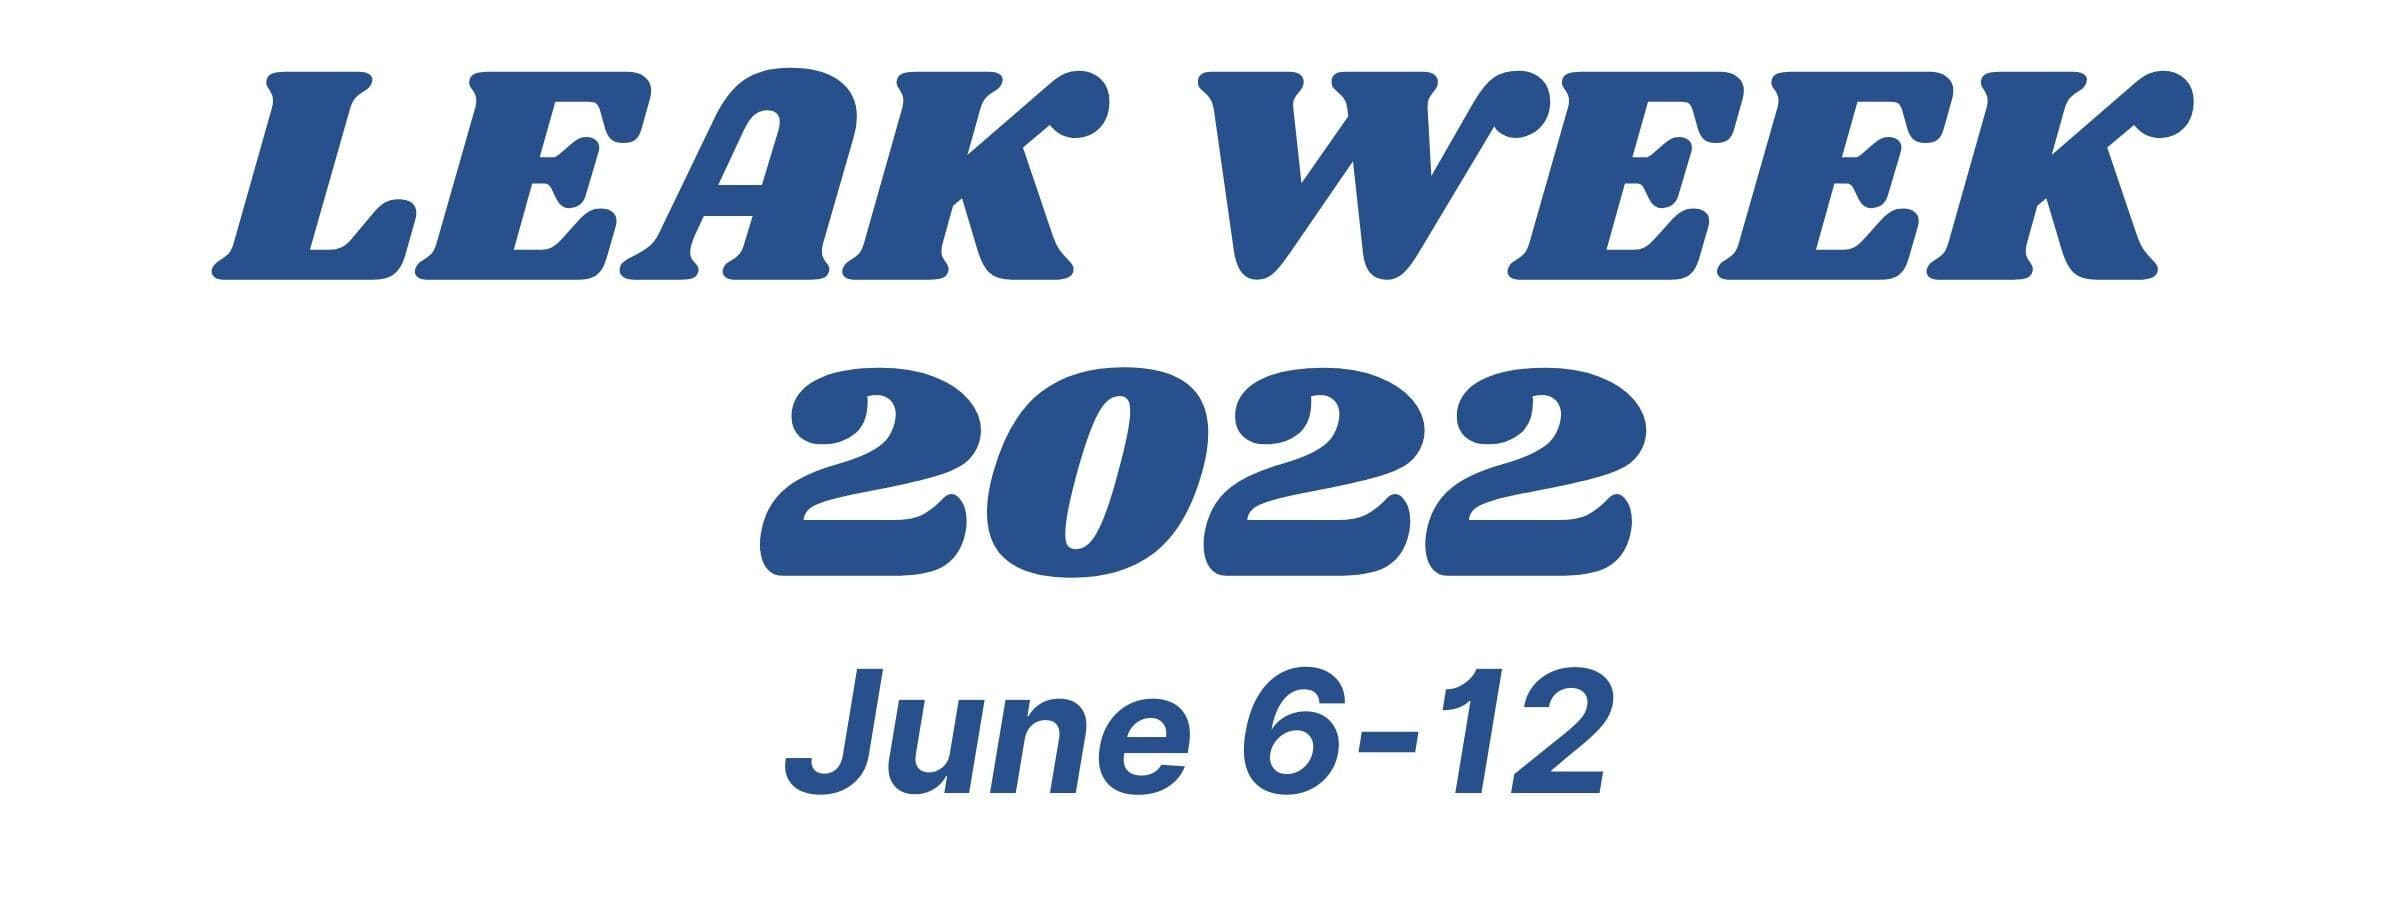 Leak Week dates